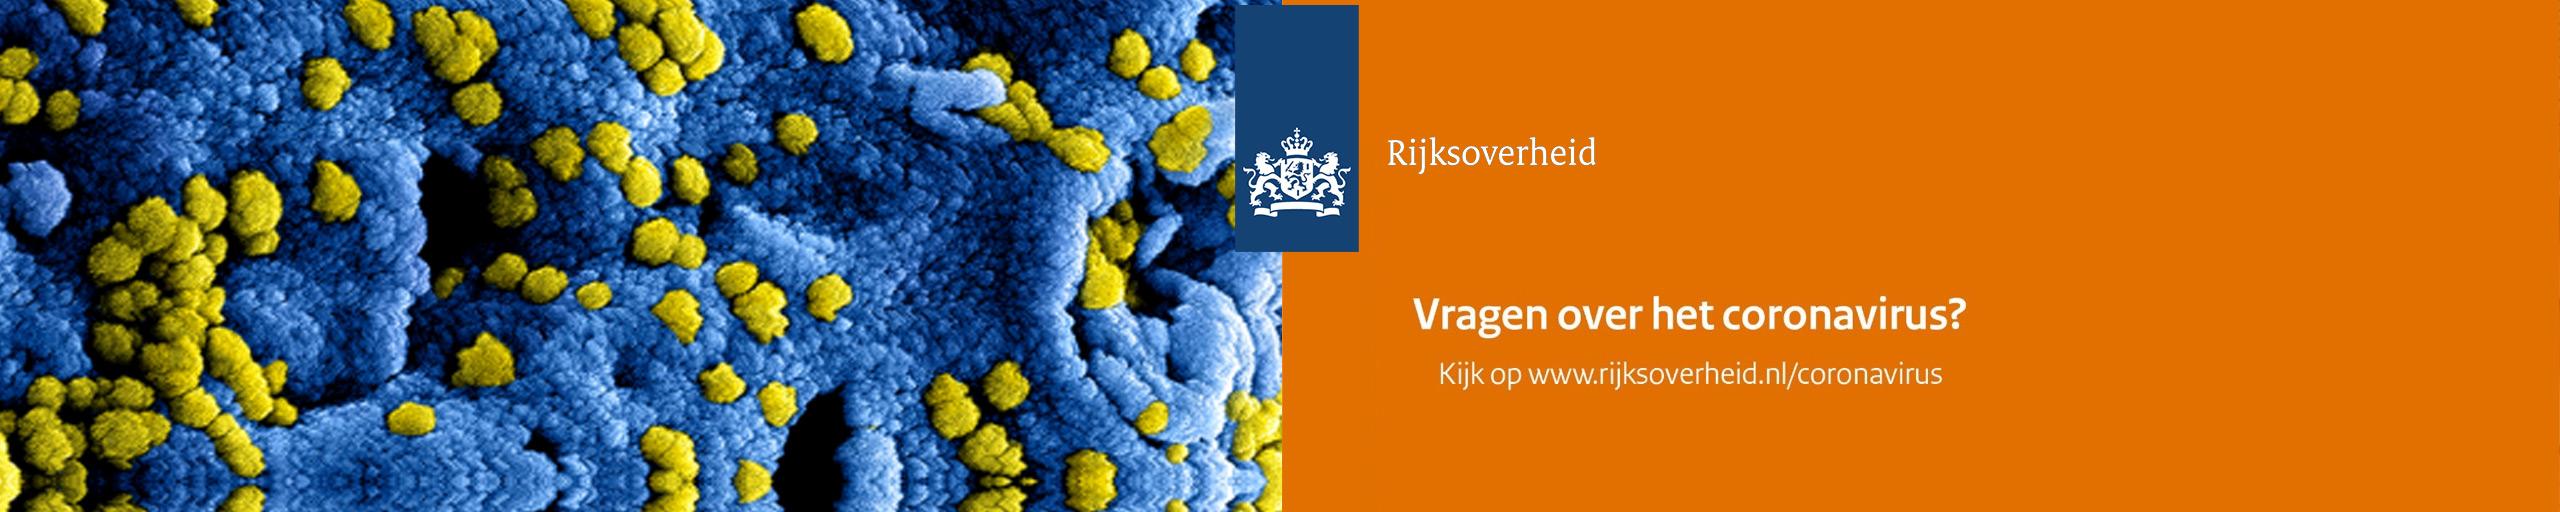 Coronavirus, ga naar www.rijksoverheid.nl/coronavirus voor meer informatie